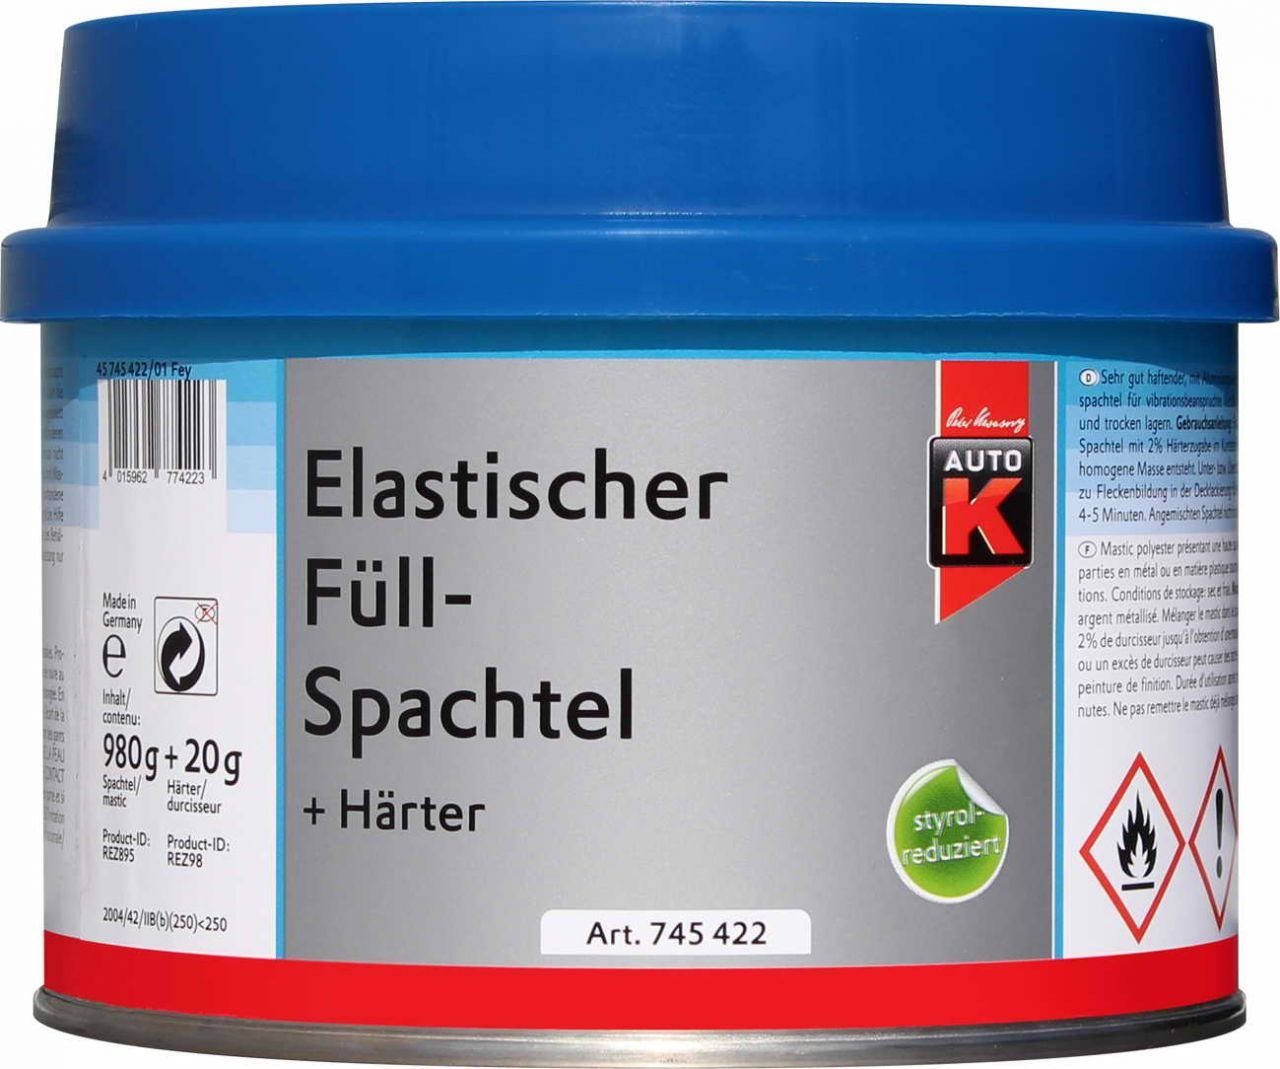 Auto-K Elastischer + Füllspachtel 1000g Breitspachtel Härter Auto-K